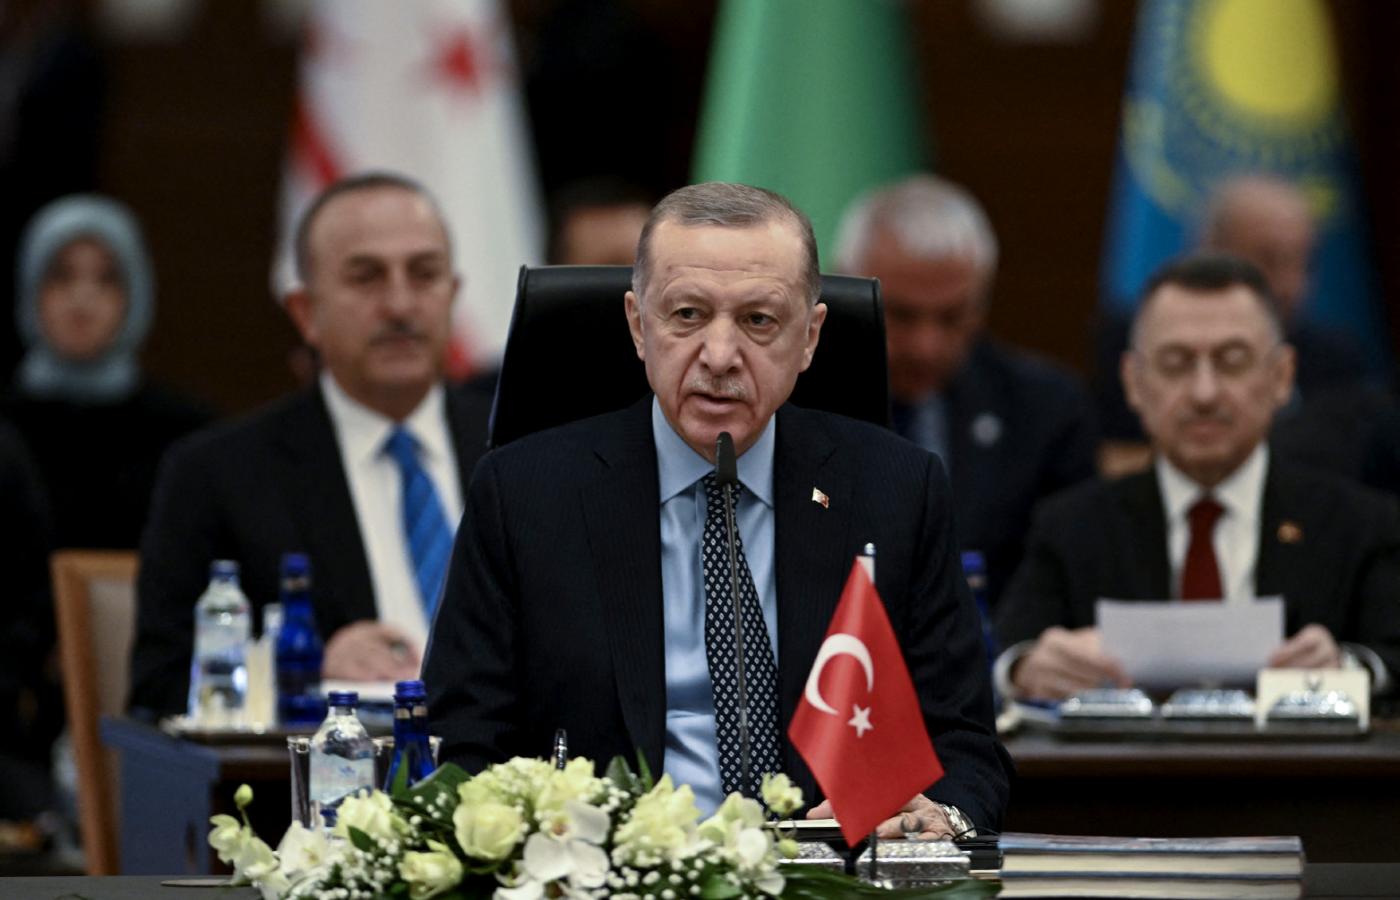 Prezydent Turcji Recep Erdoğan pozostaje nieugięty w kwestii przyjęcia Szwecji do Sojuszu.